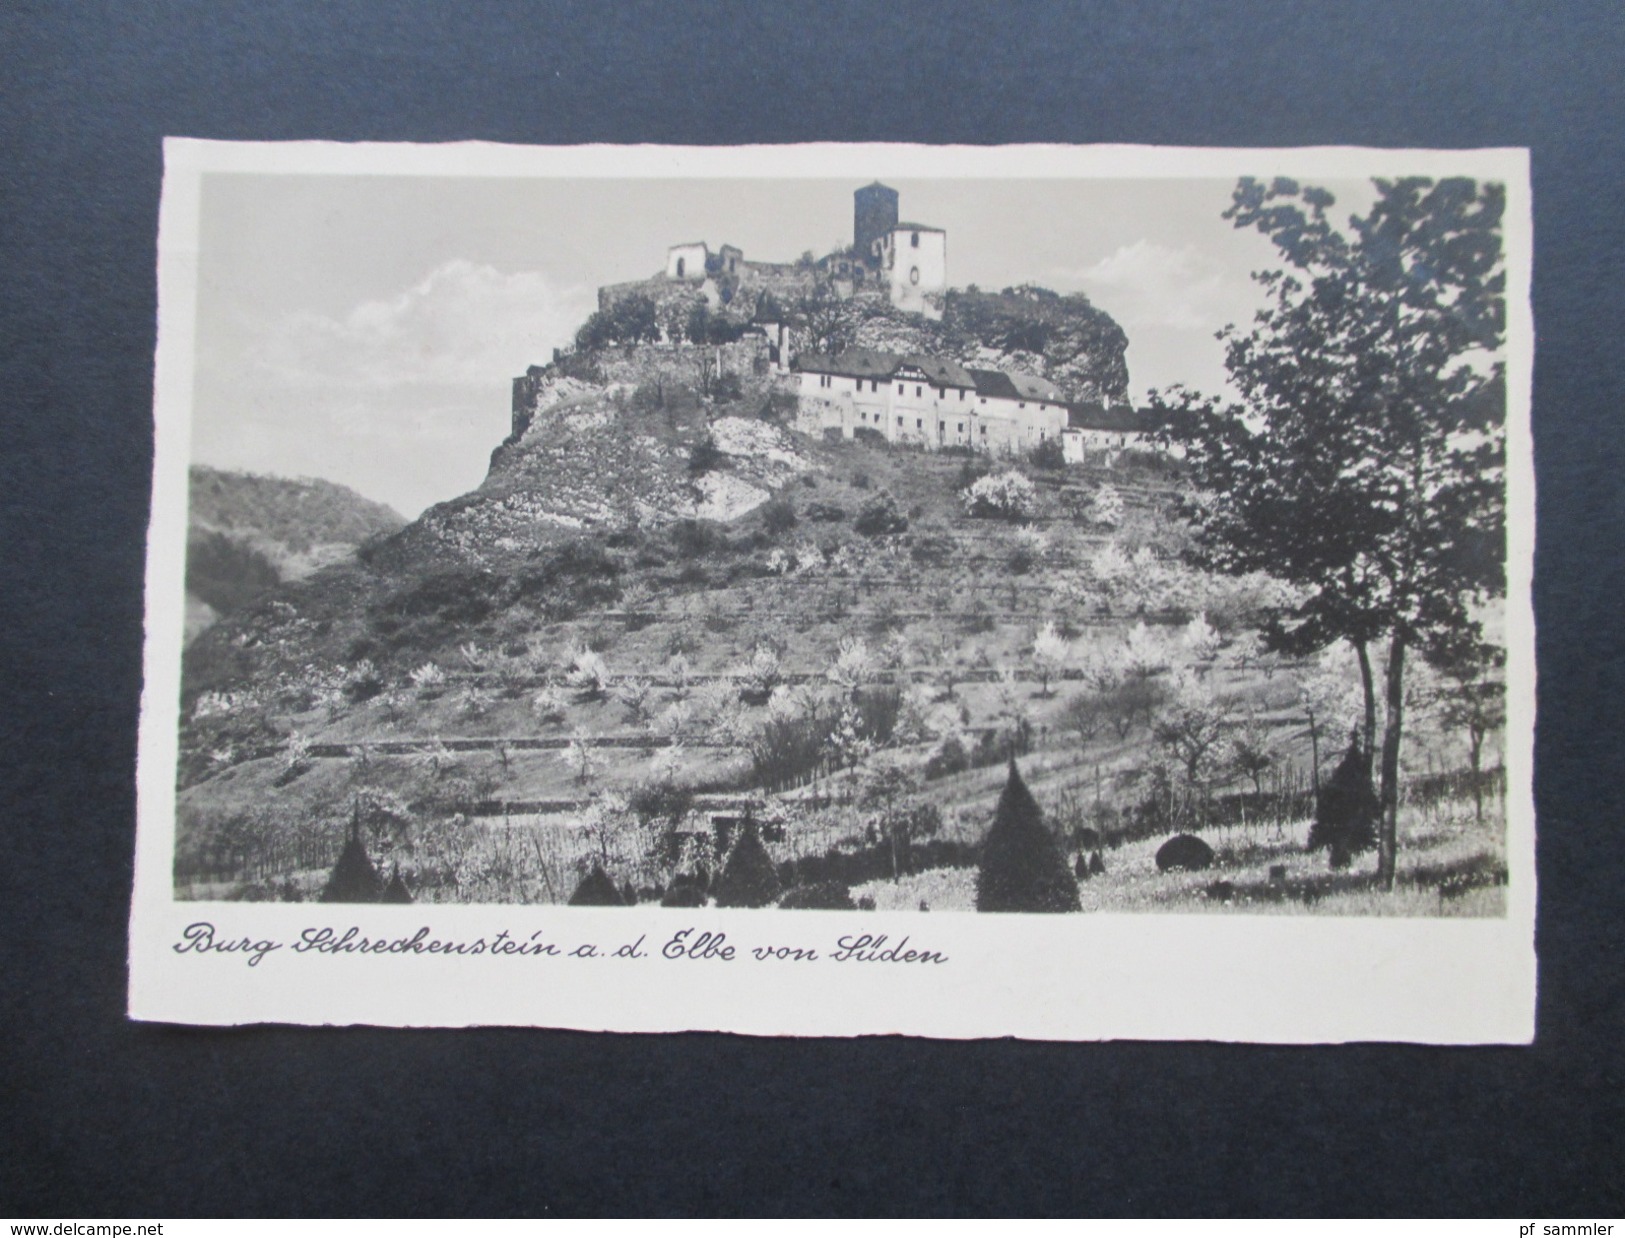 DR / Böhmen 1941 Heute Tschechien. Burg Schreckenstein. Burgwirtschaft Schreckenstein. Aussig. Stempelfehler?? - Boehmen Und Maehren